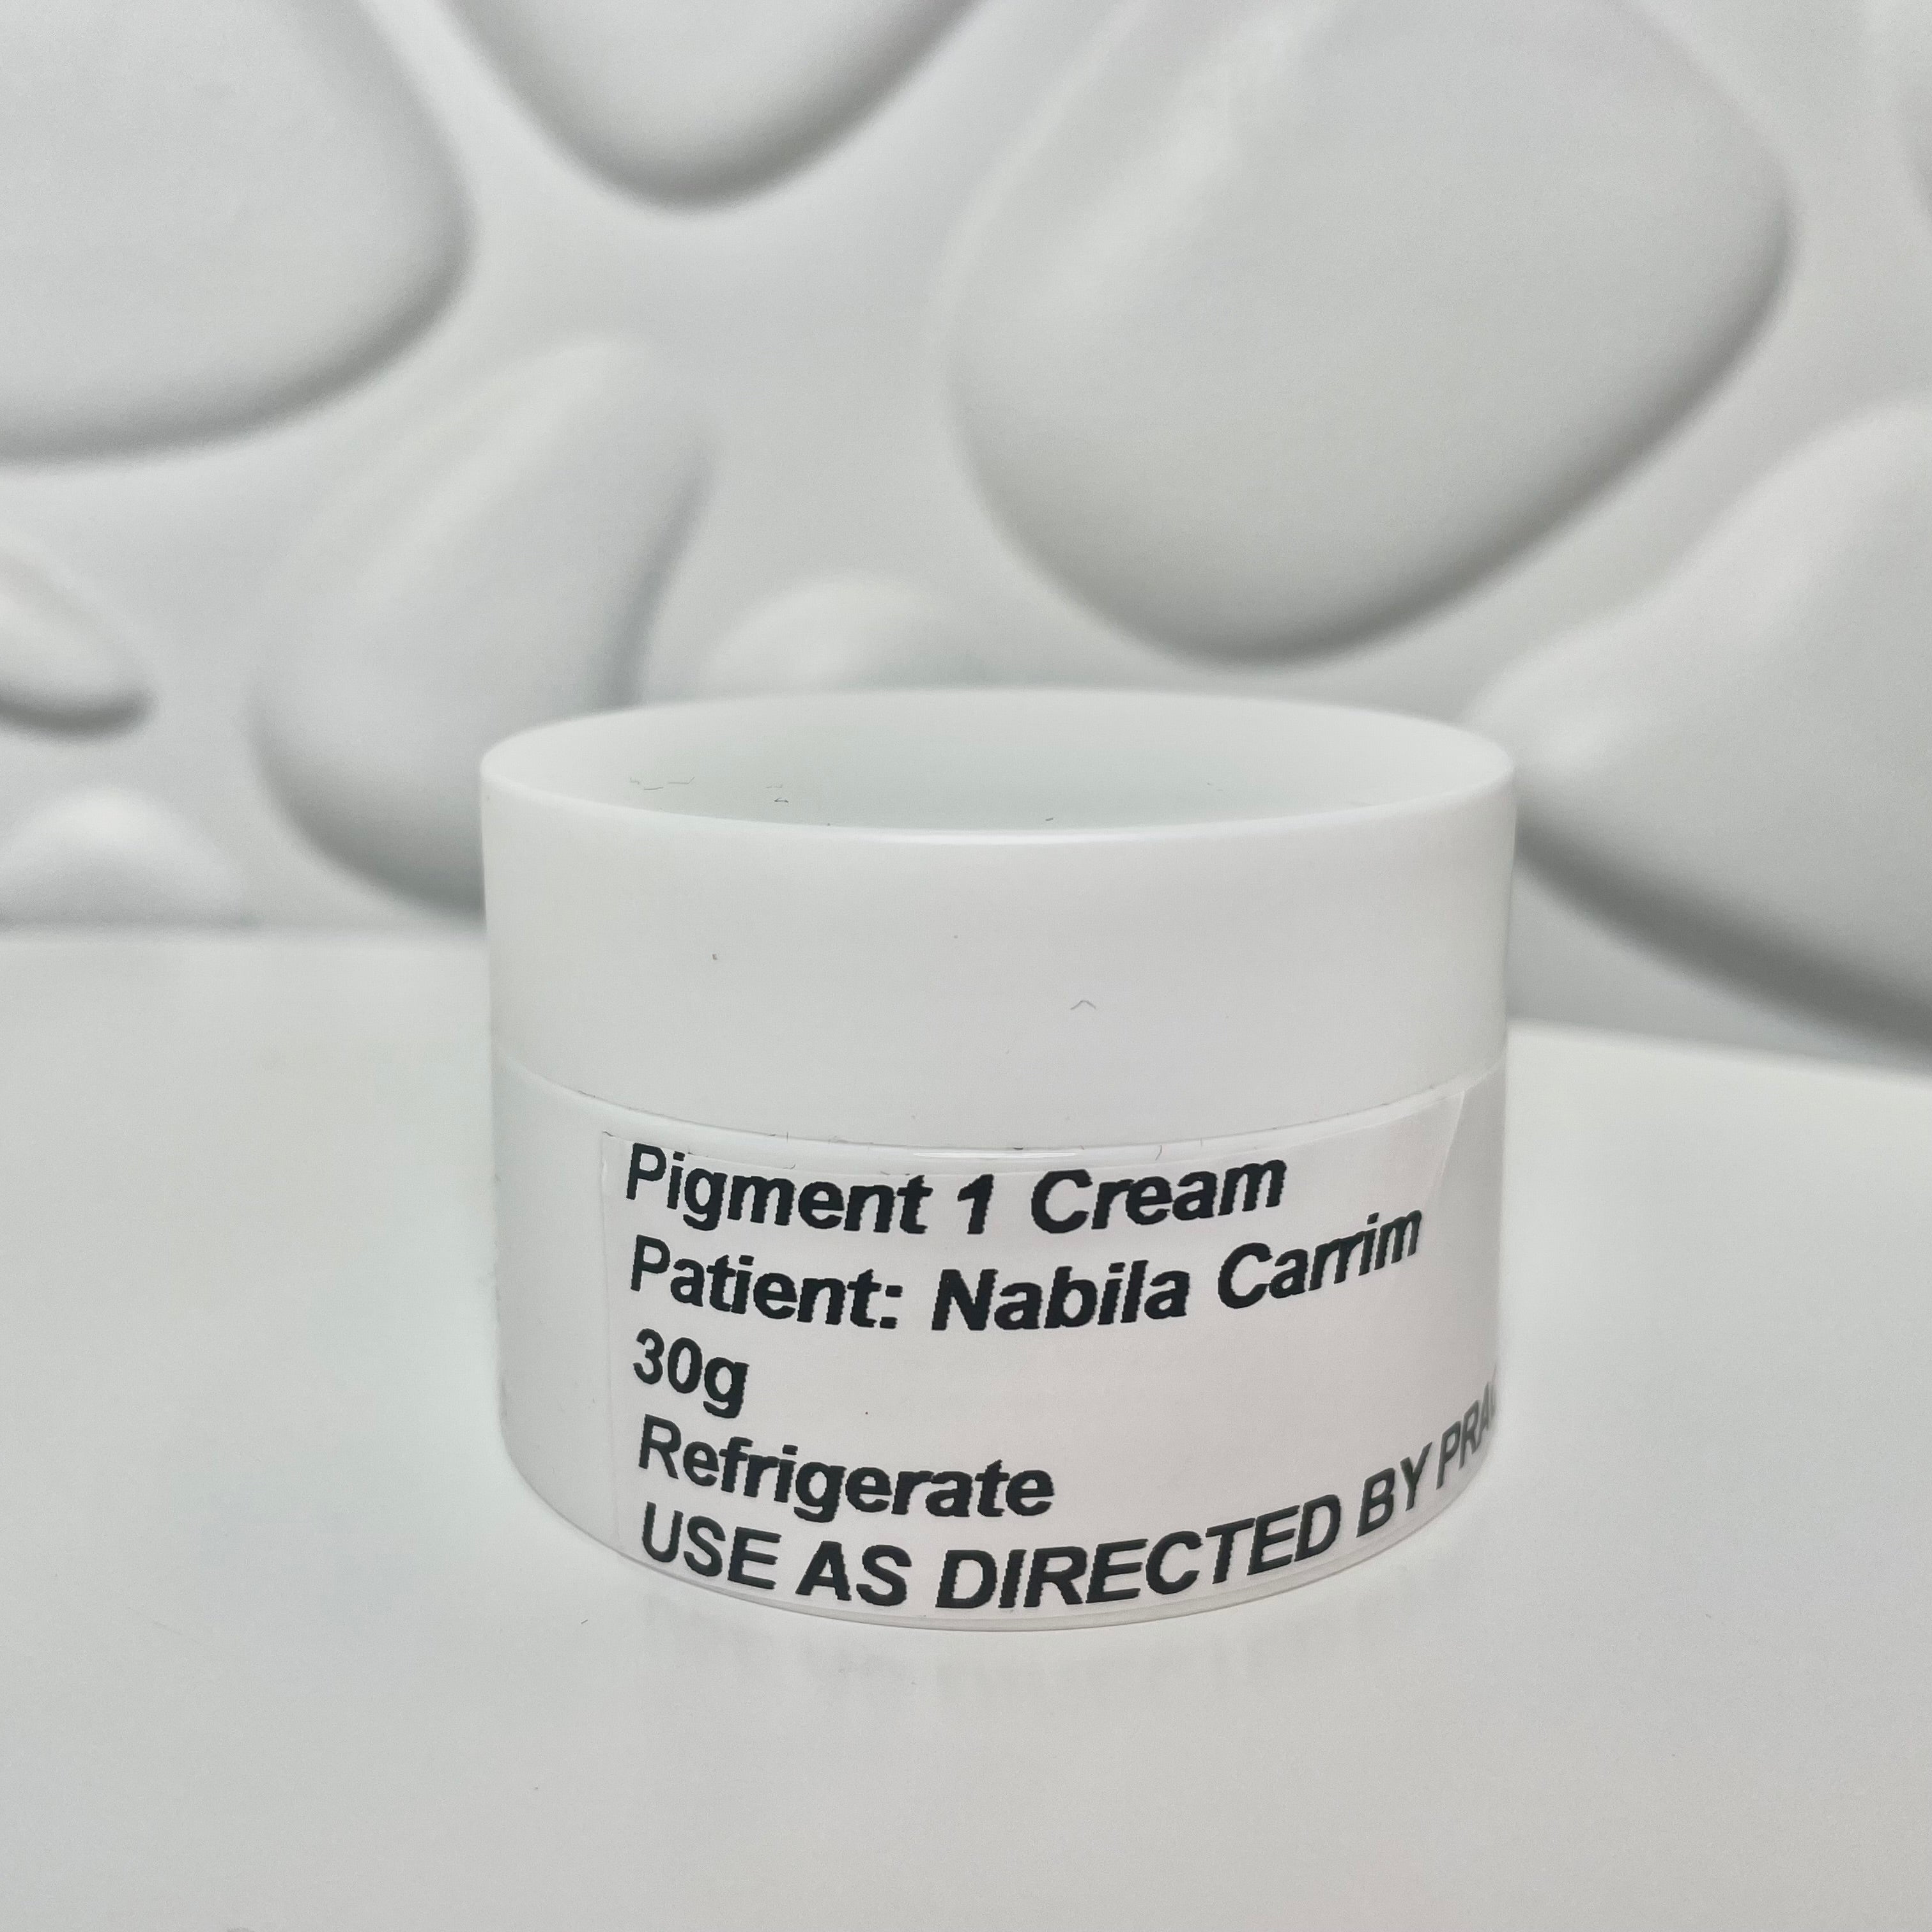 Pigmentation 1 Cream